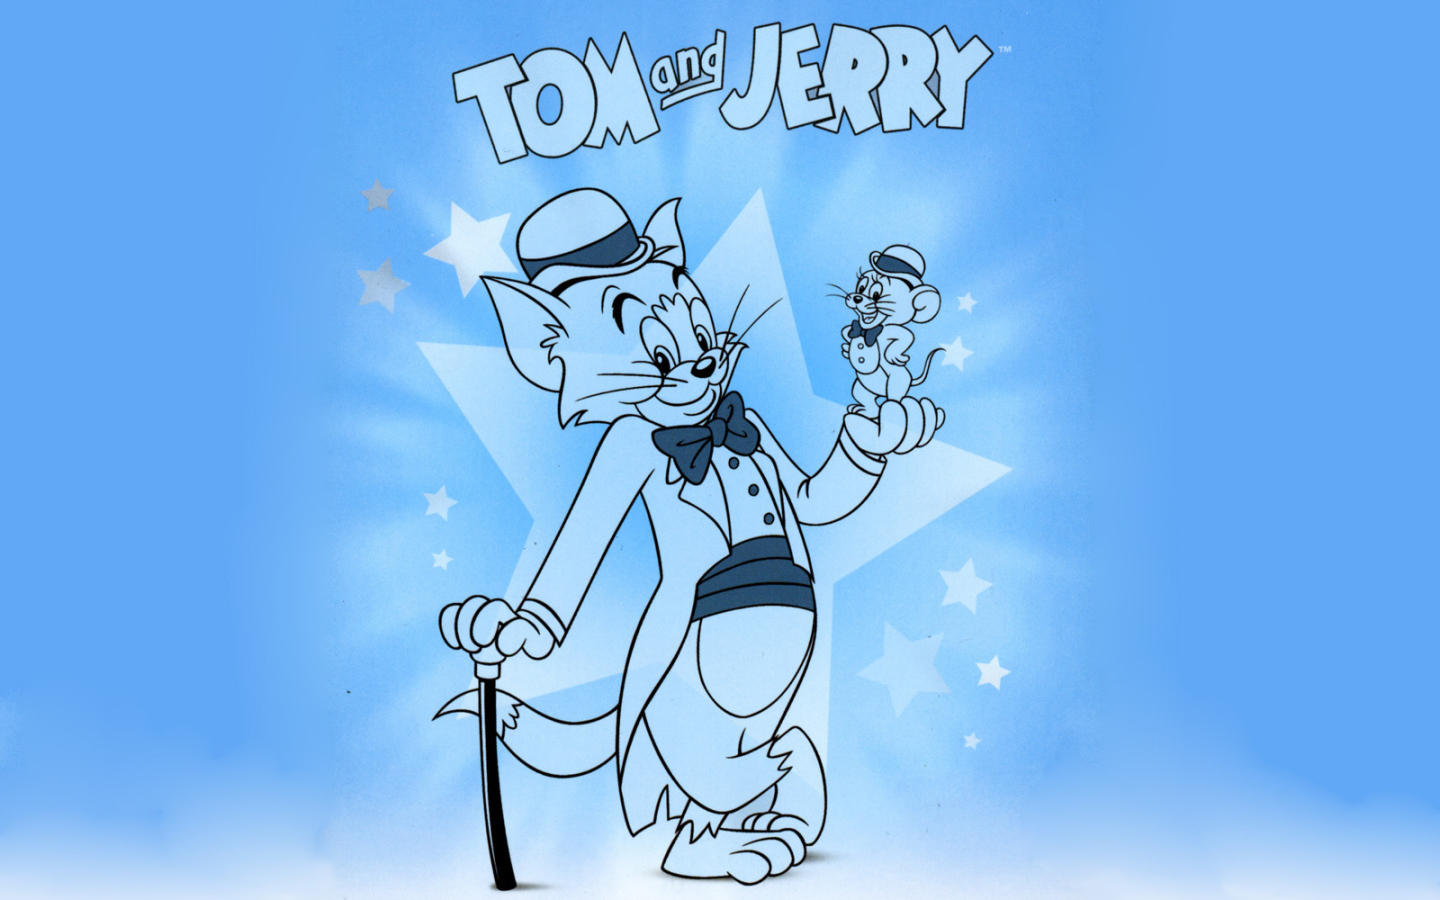 Том и Джерри носит костюмы